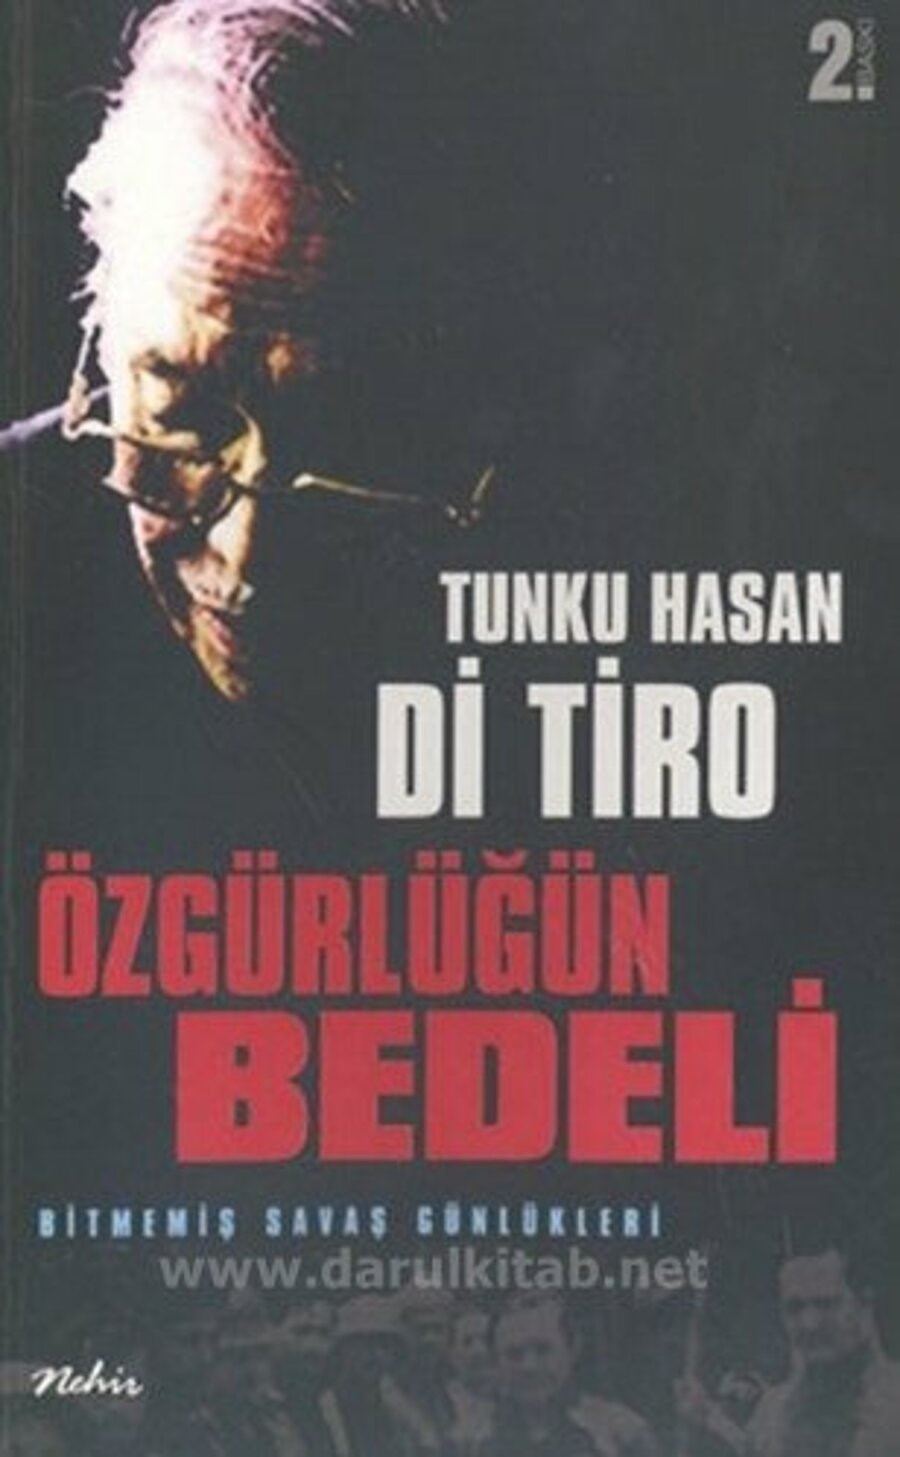 Hasan Di Tiro'nun Açe'nin özgürlüğü için verdiği mücadeleyi anlattığı kitabı.